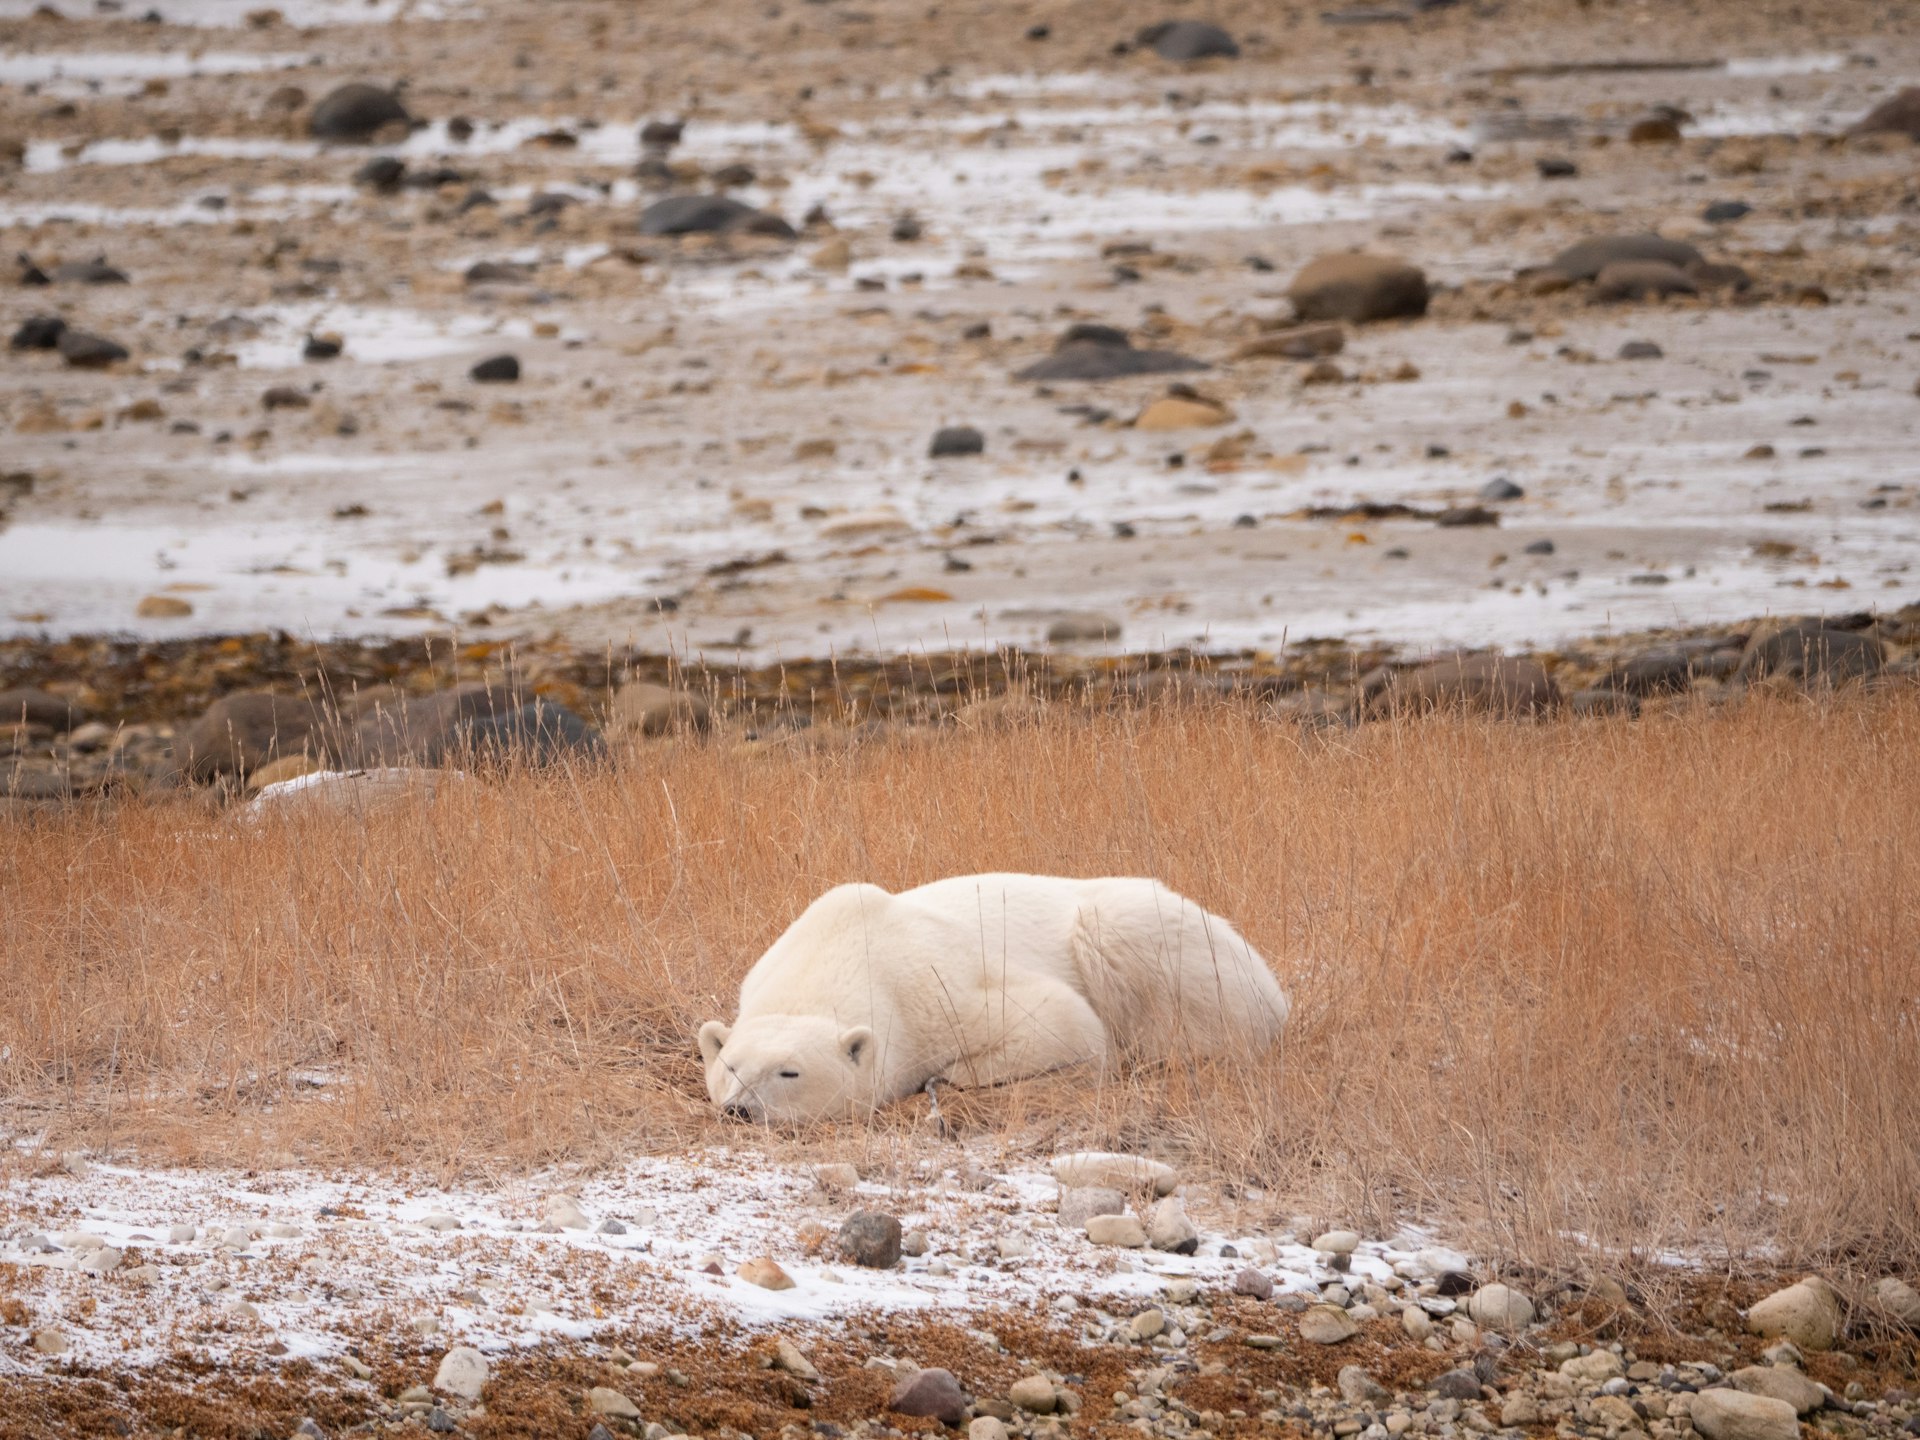 A polar bear sleeping on the ground